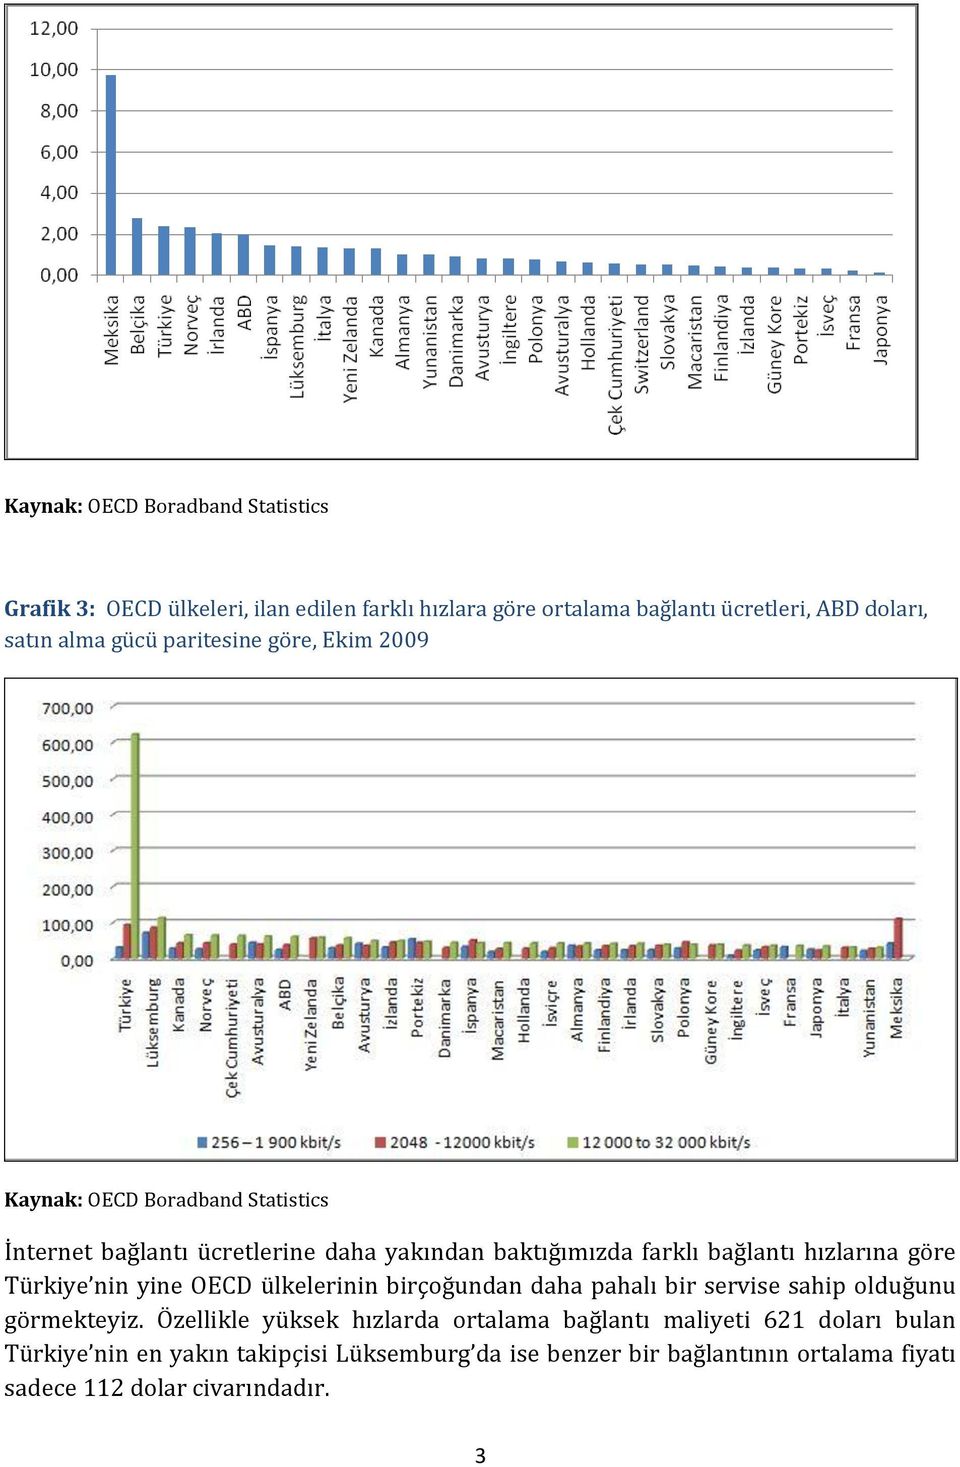 hızlarına göre Türkiye nin yine OECD ülkelerinin birçoğundan daha pahalı bir servise sahip olduğunu görmekteyiz.